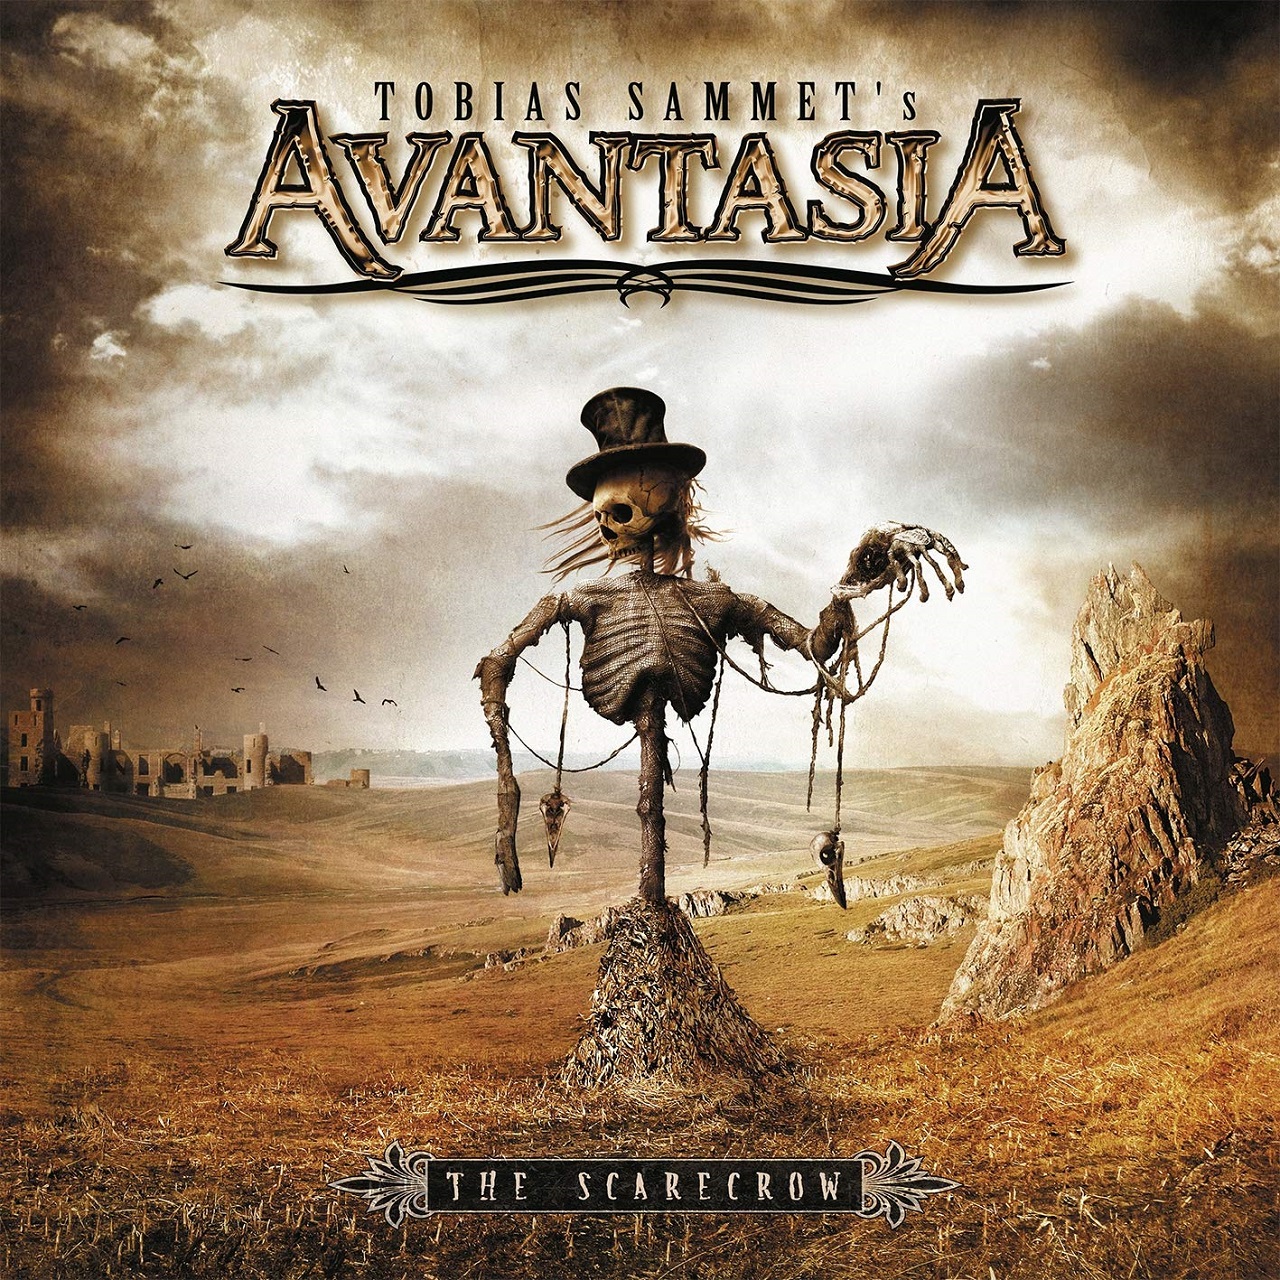 General 1280x1280 Avantasia power metal music Tobias Sammet cover art album covers band